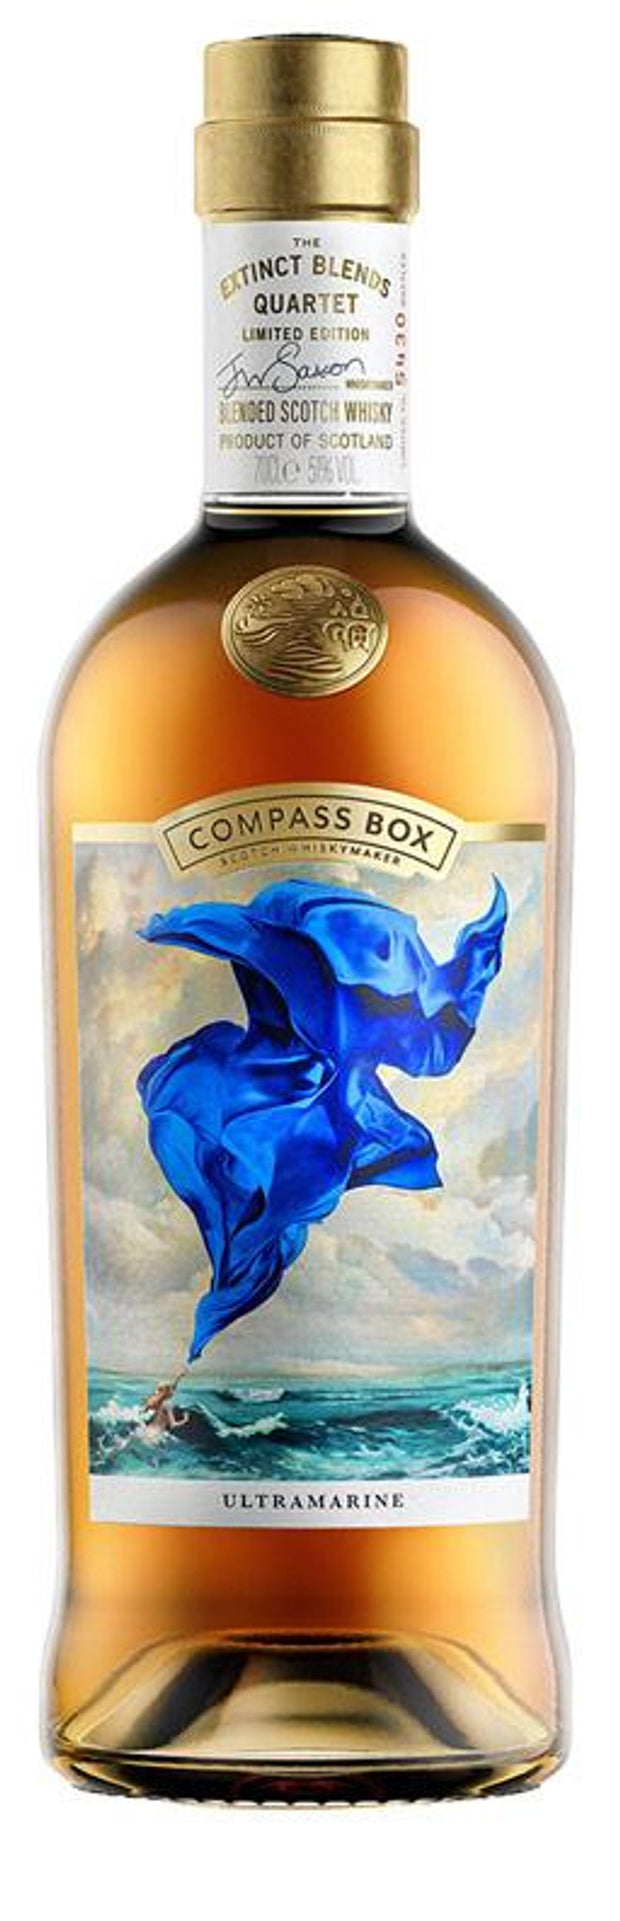 Compass Box Ultramarine The Extinct Blends Quartet Blended Scotch Whisky 700ml